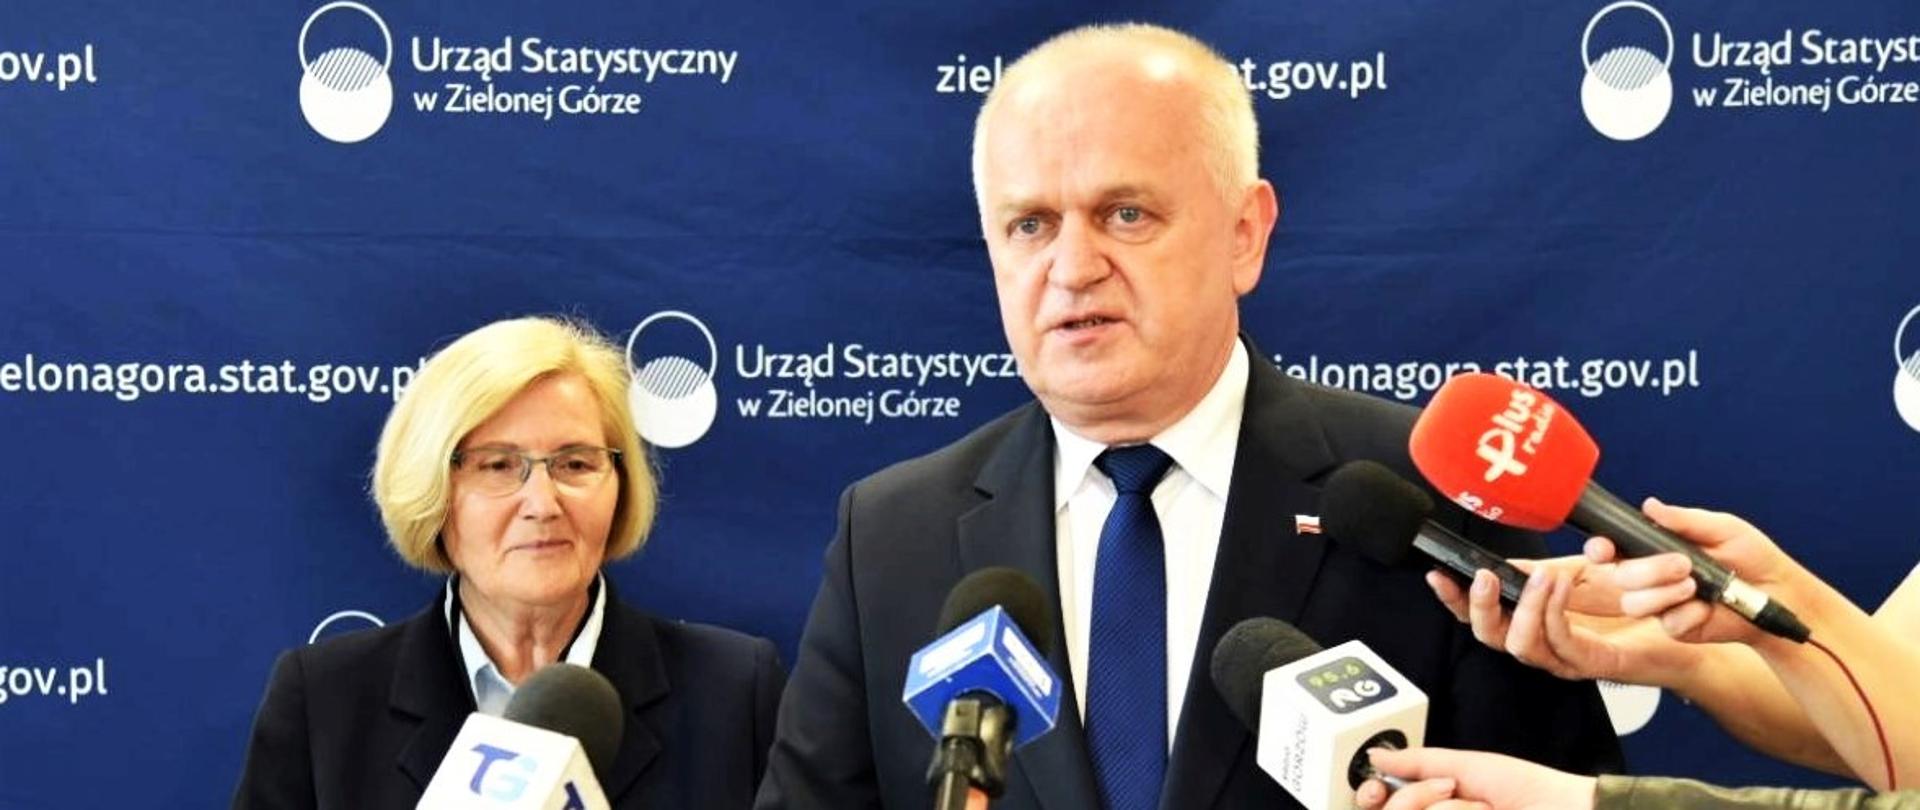 Wojewoda Władysław Dajczak w czasie konferencji prasowej